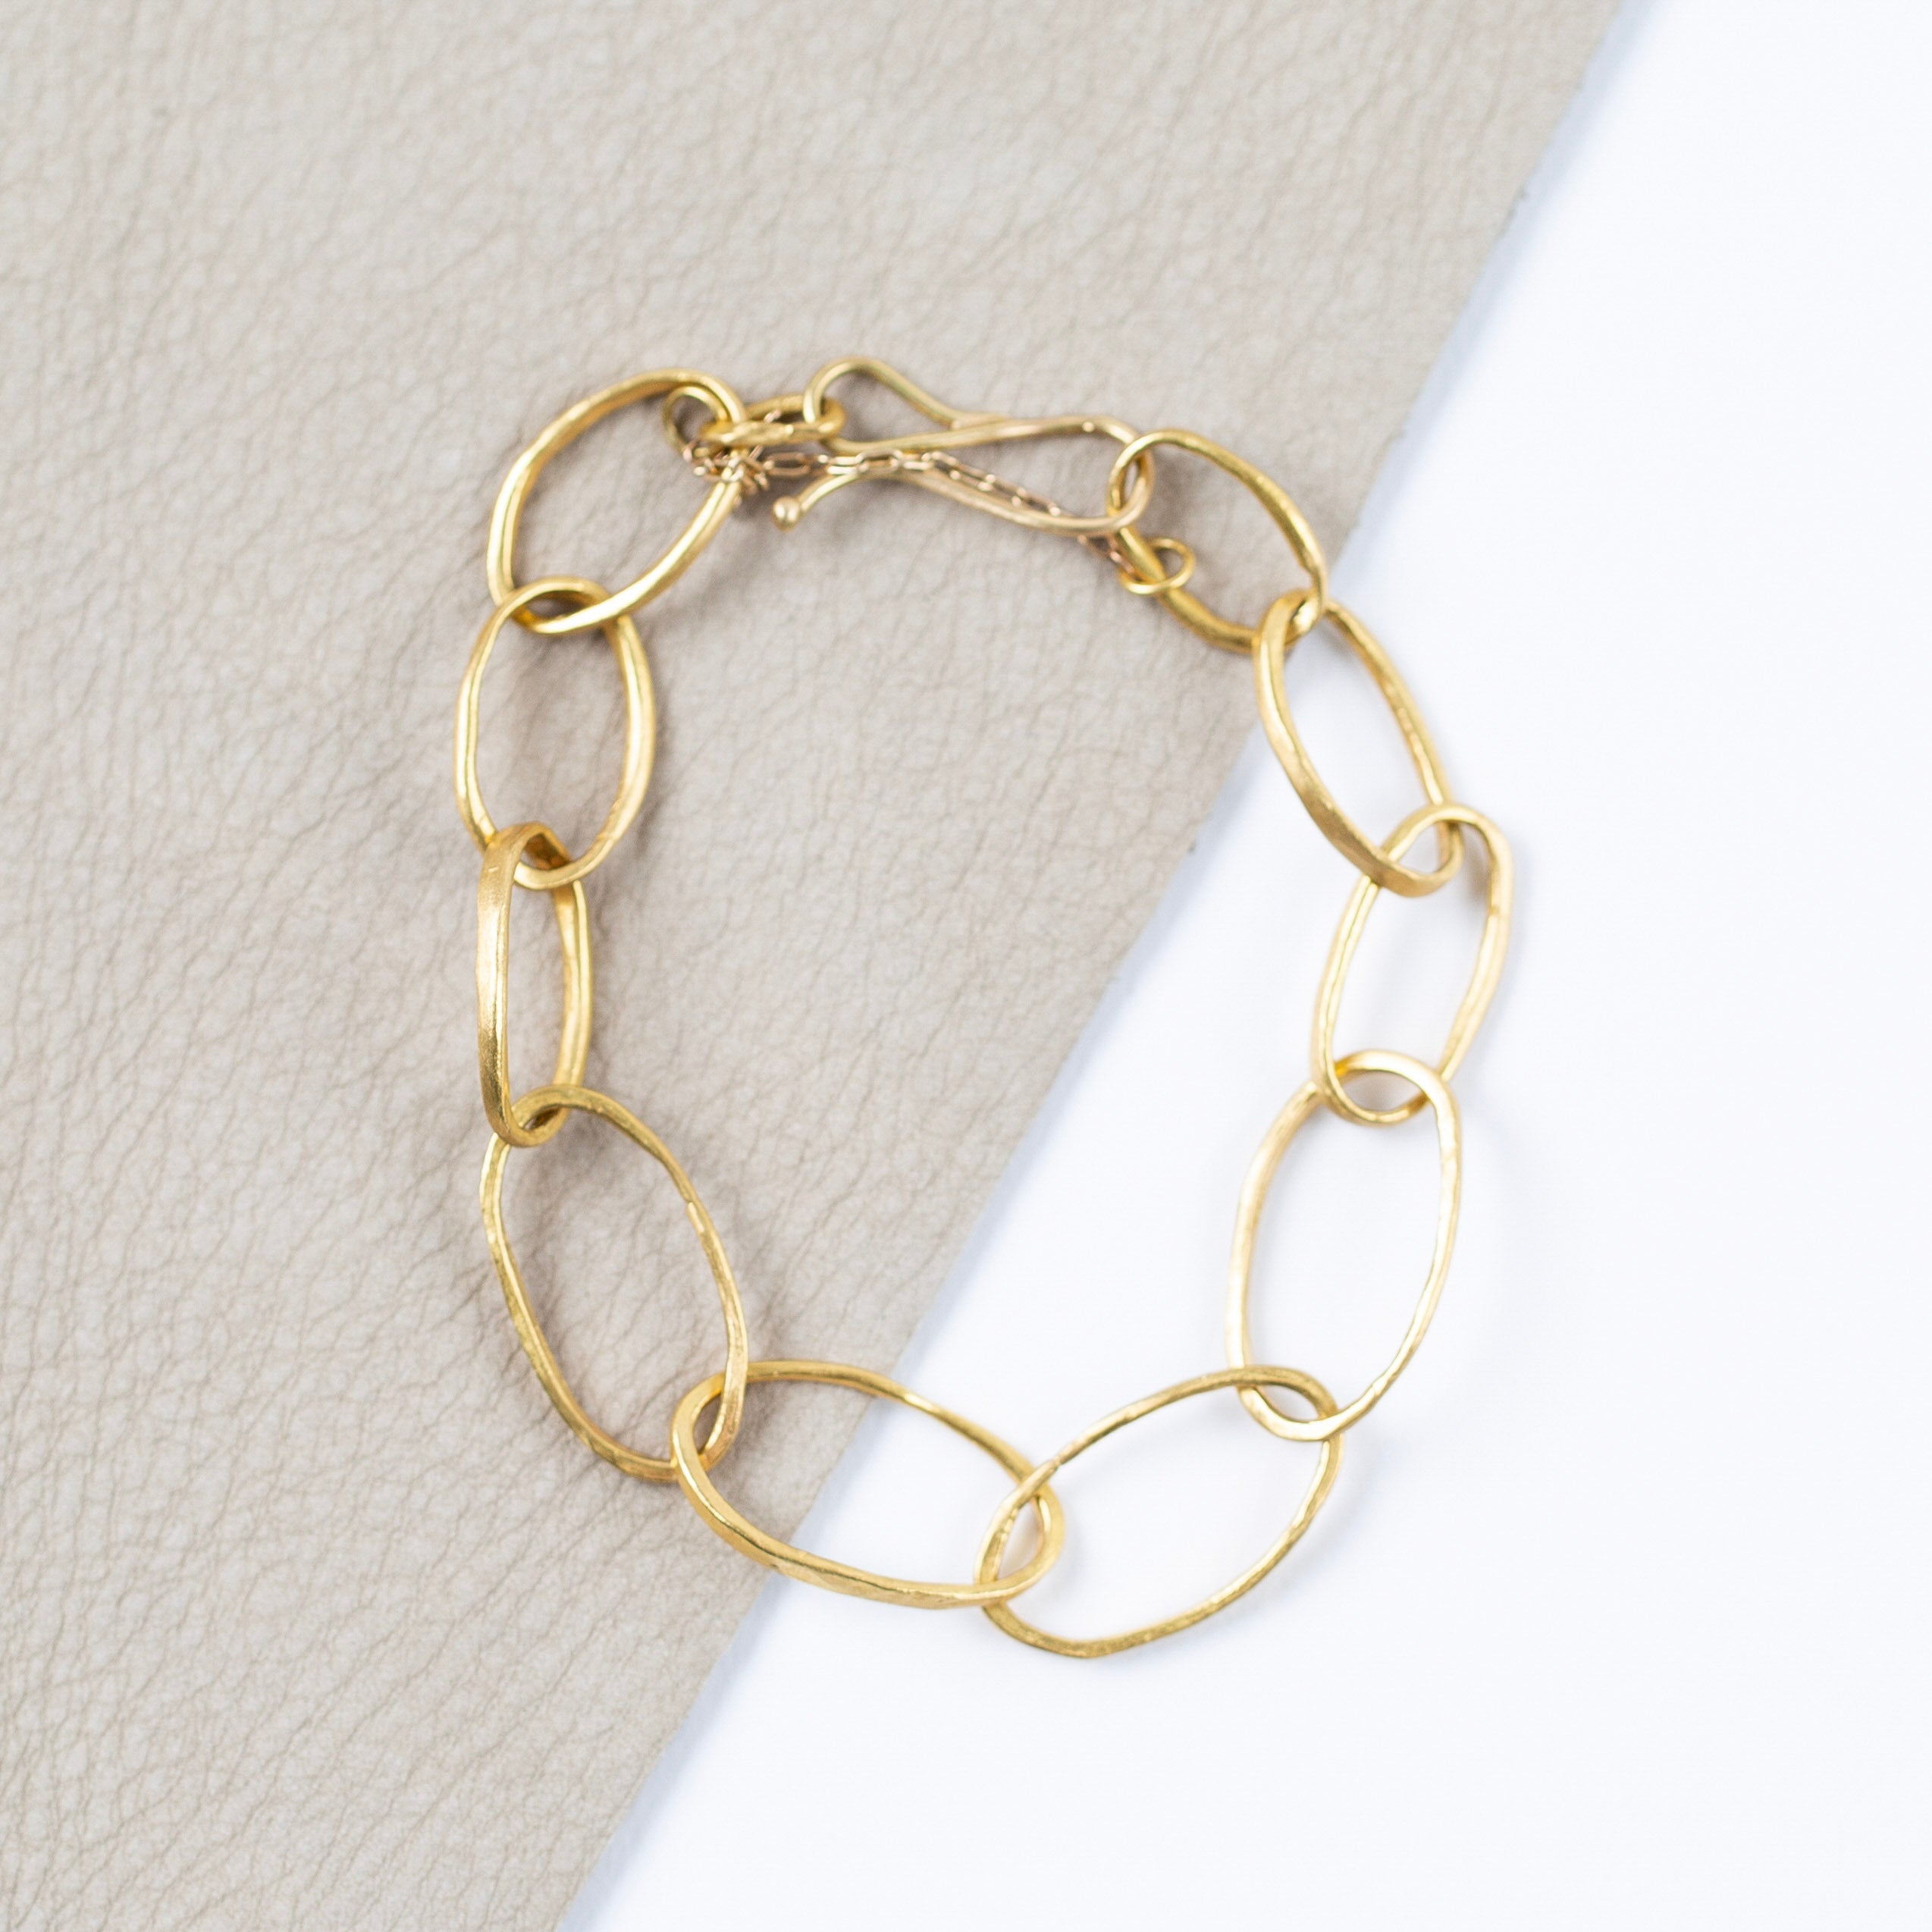 Rosanne Pugliese <br>22K Gold Petal Link Bracelet